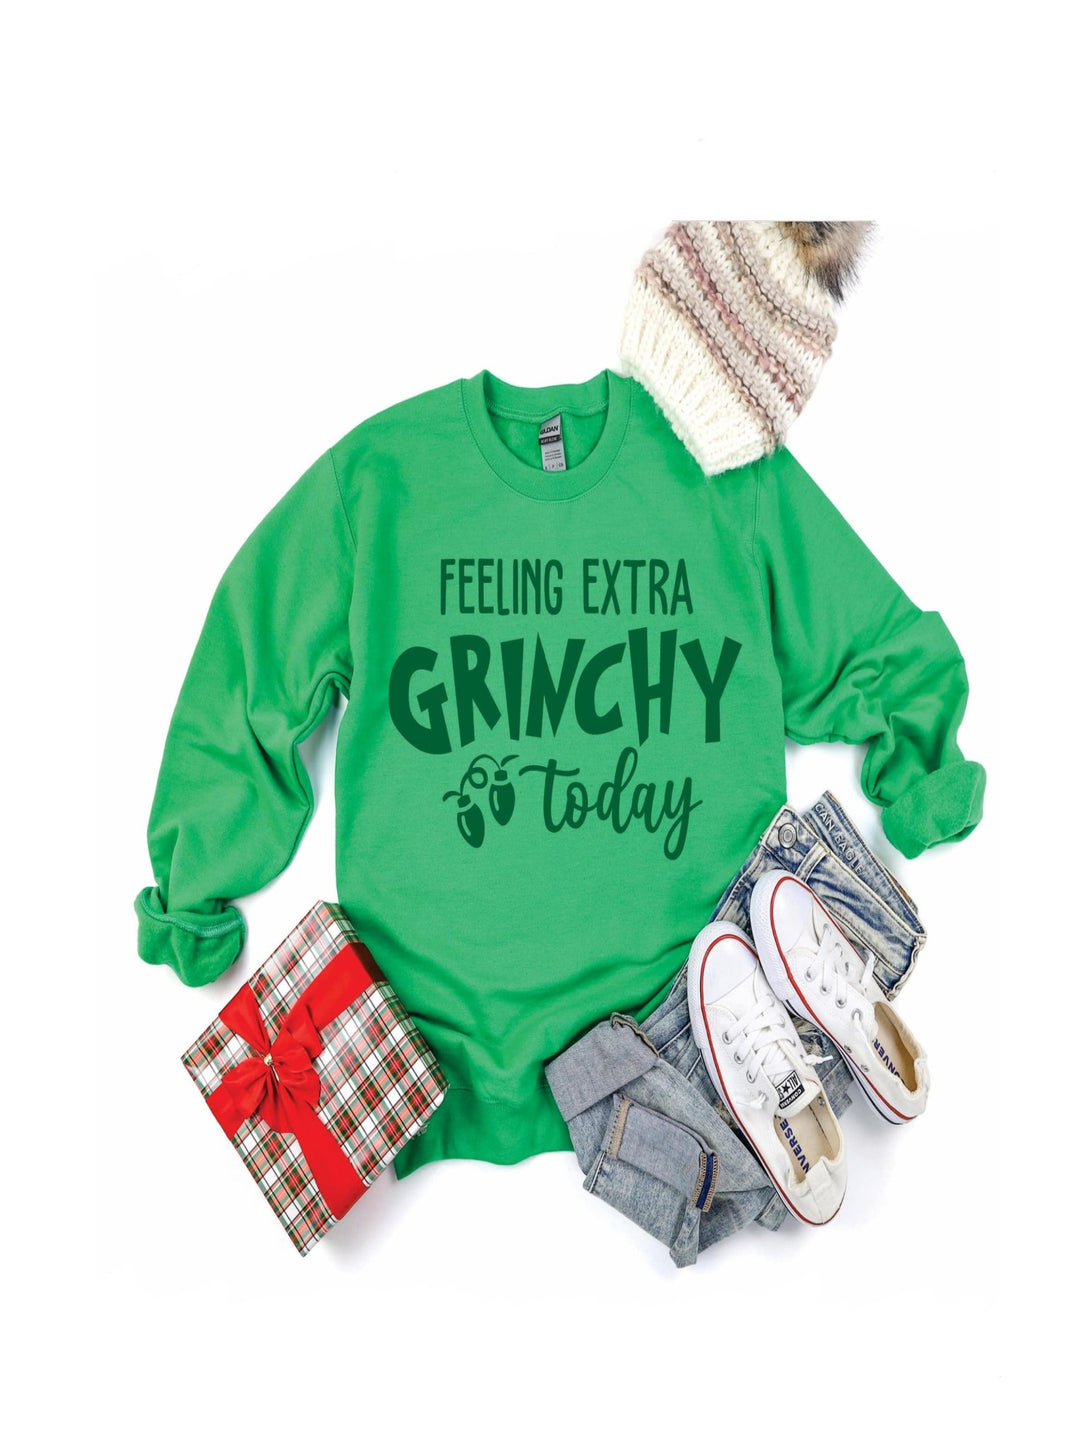 Feeling Extra Grinchy Today Sweatshirt, Green